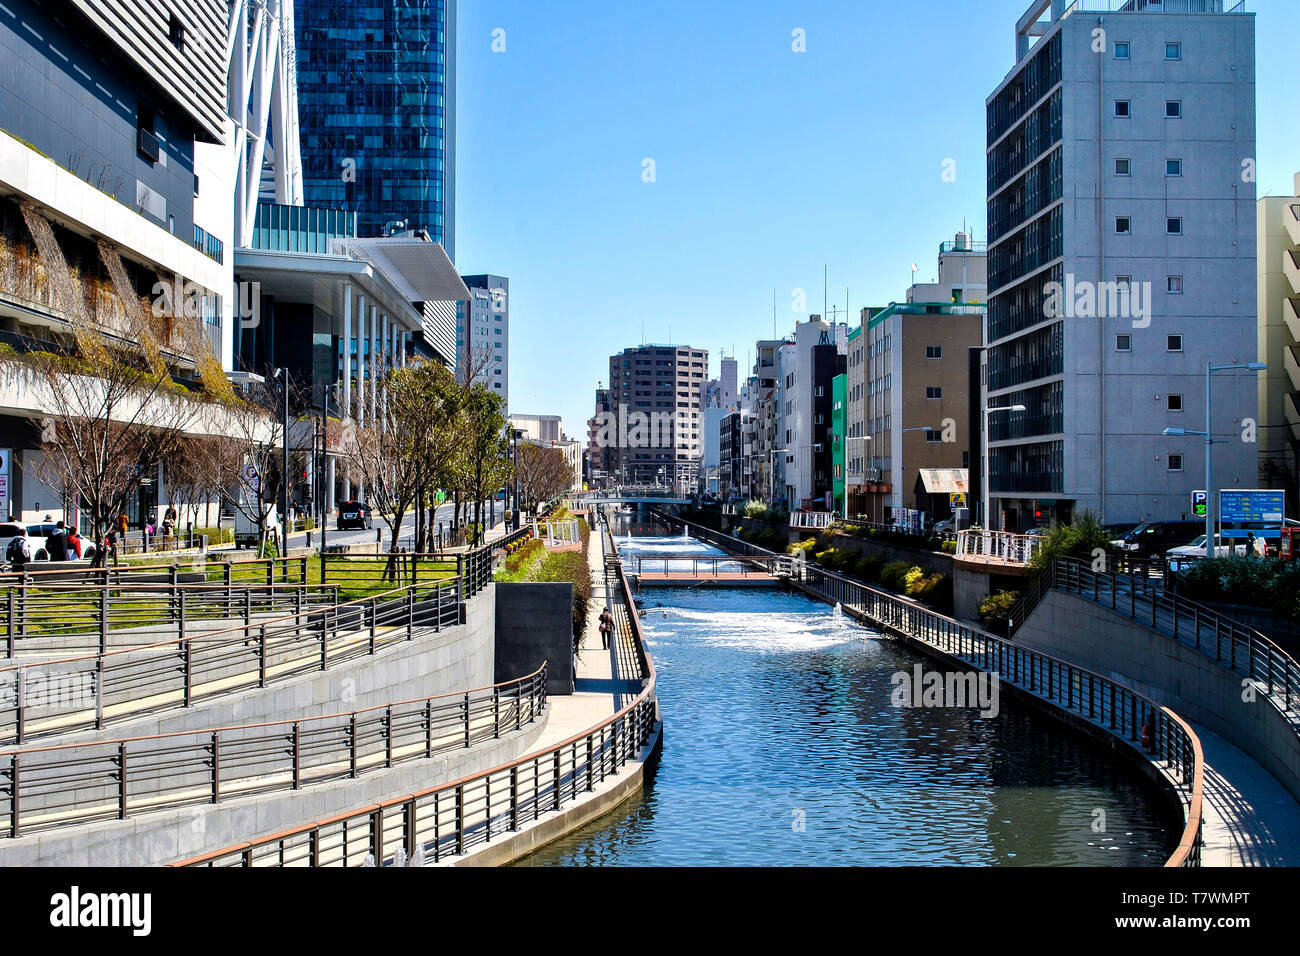 La traversée des rivières entre les bâtiments et les parcs. Rivière Sumida. Sumida, Tokyo, Japon. Banque D'Images